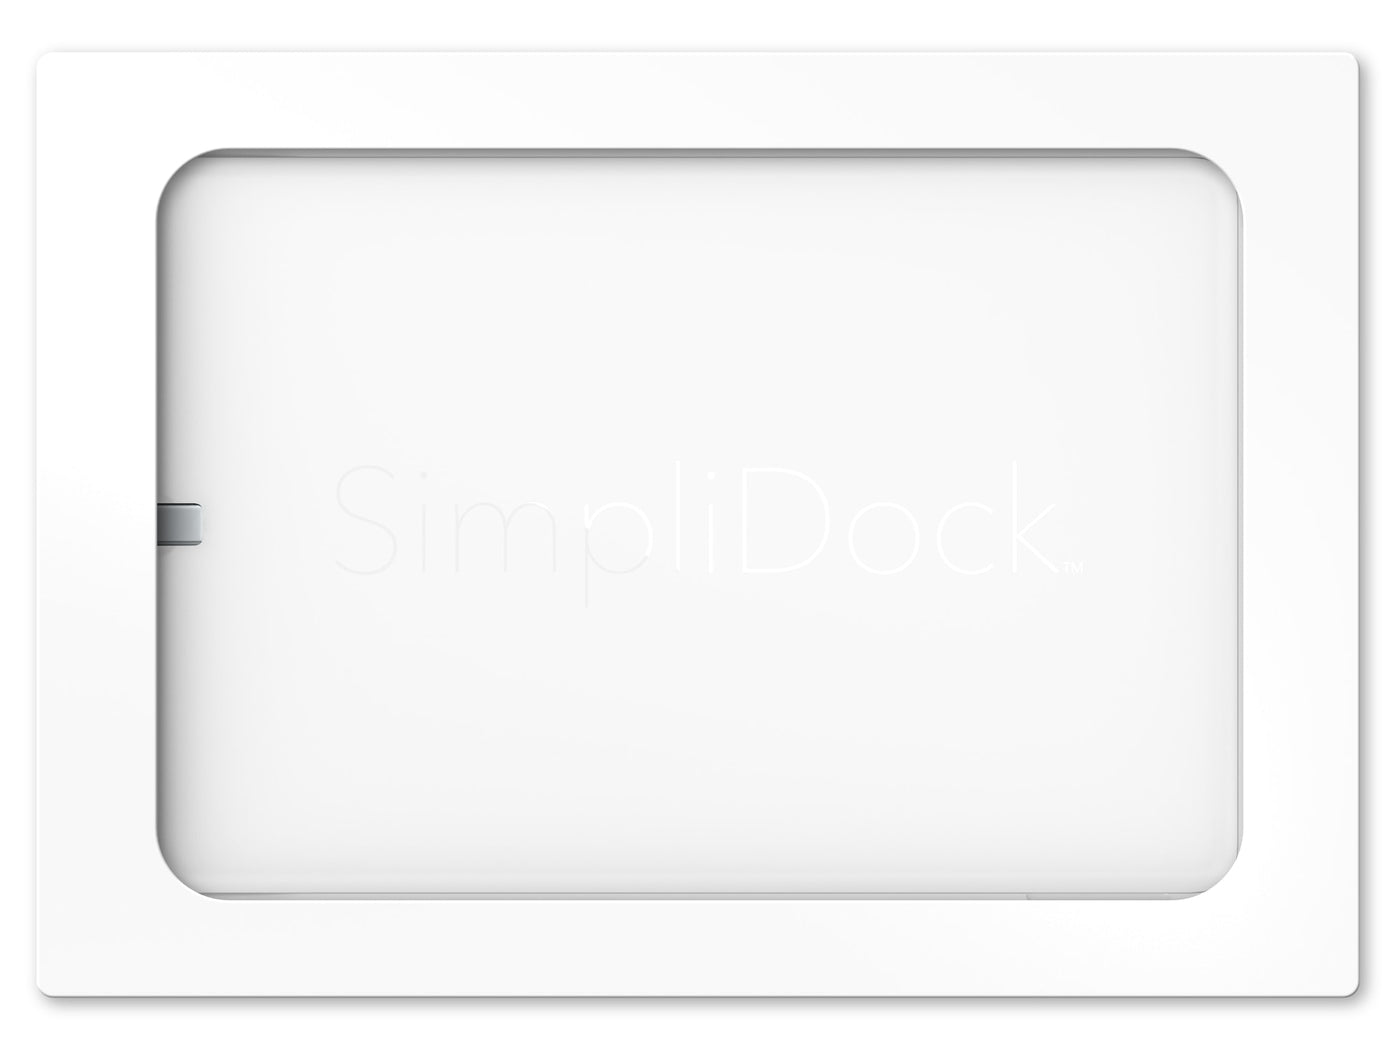 SimpliDock® for iPad® mini 6